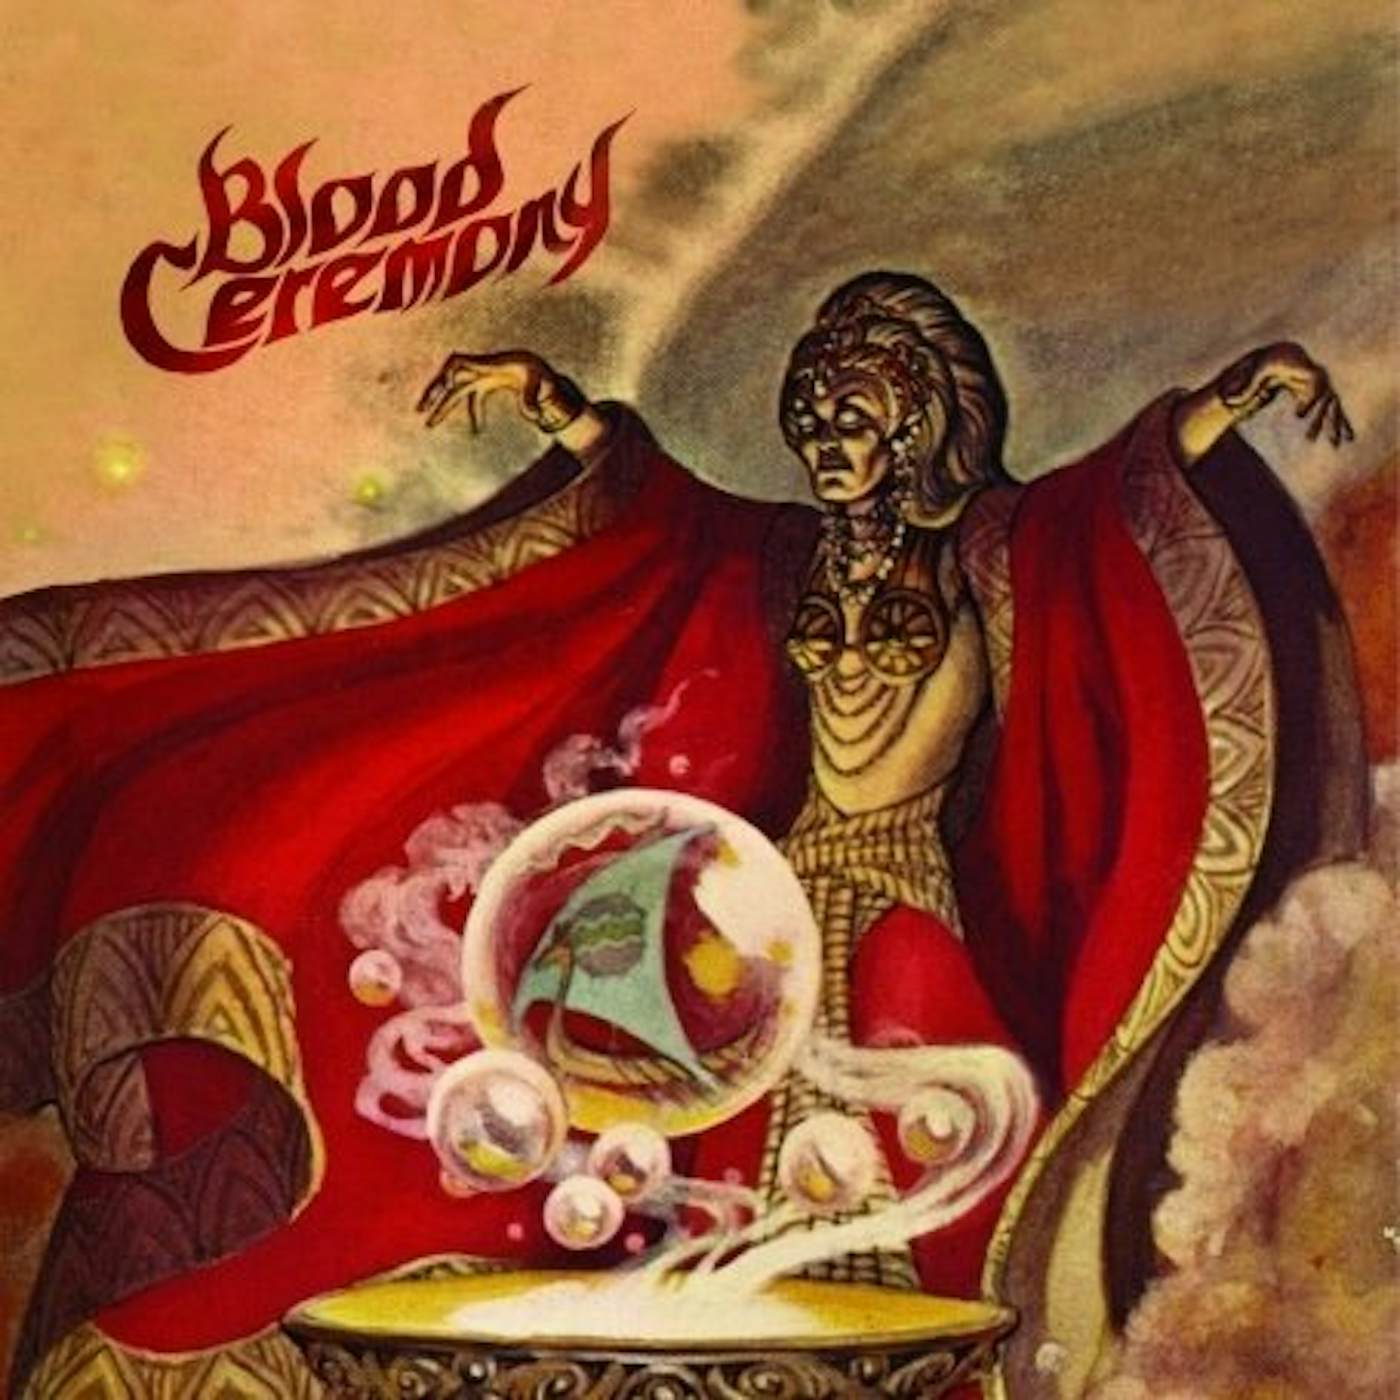 Blood Ceremony Vinyl Record